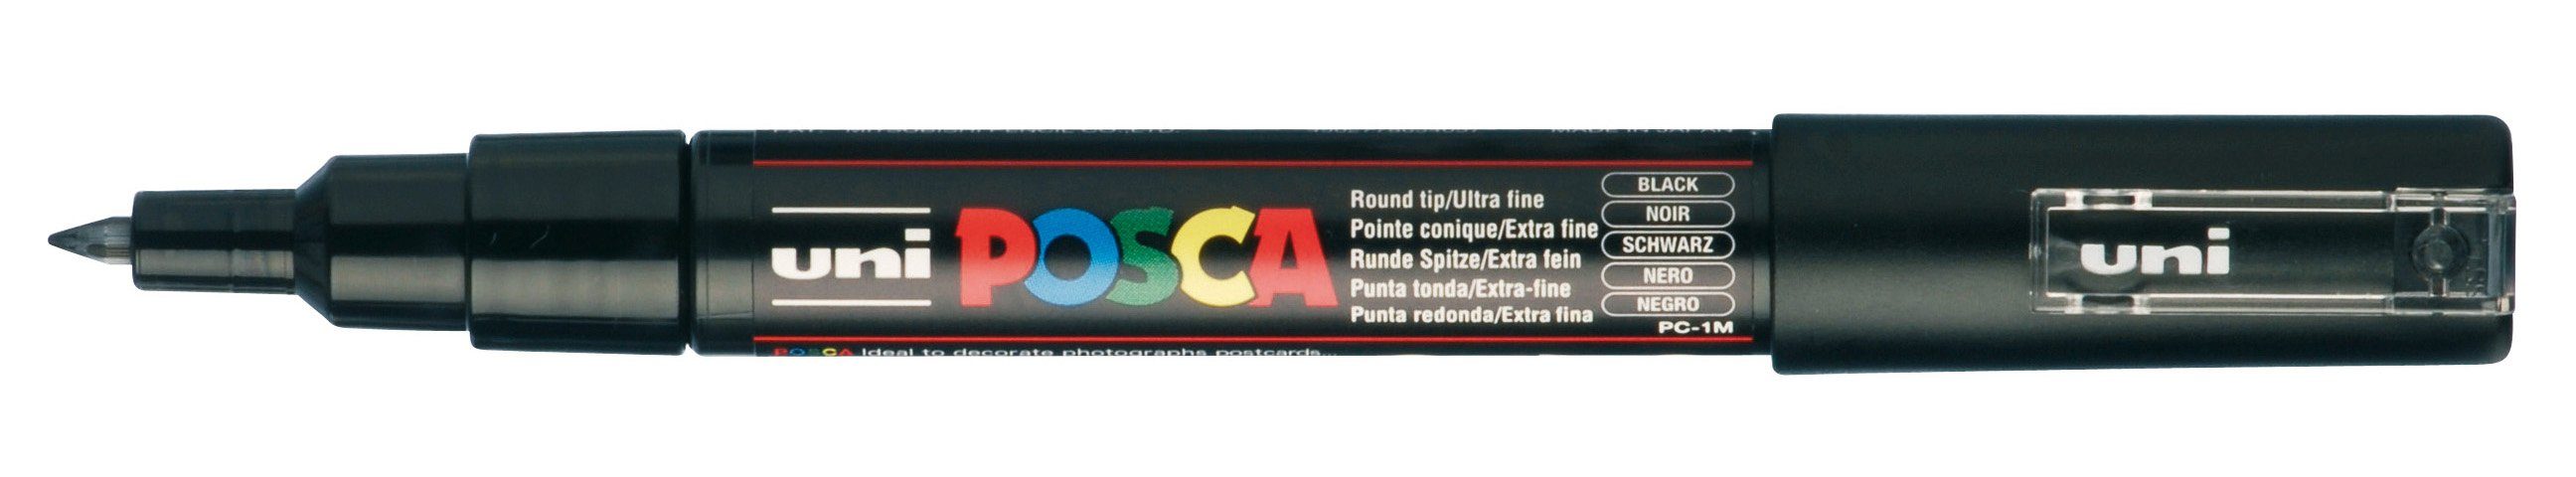 POSCA Marker Marker PC-1MC, Lichtecht, Wasserbasis, Geruchsneutral, Wasserverdünnbar Schwarz